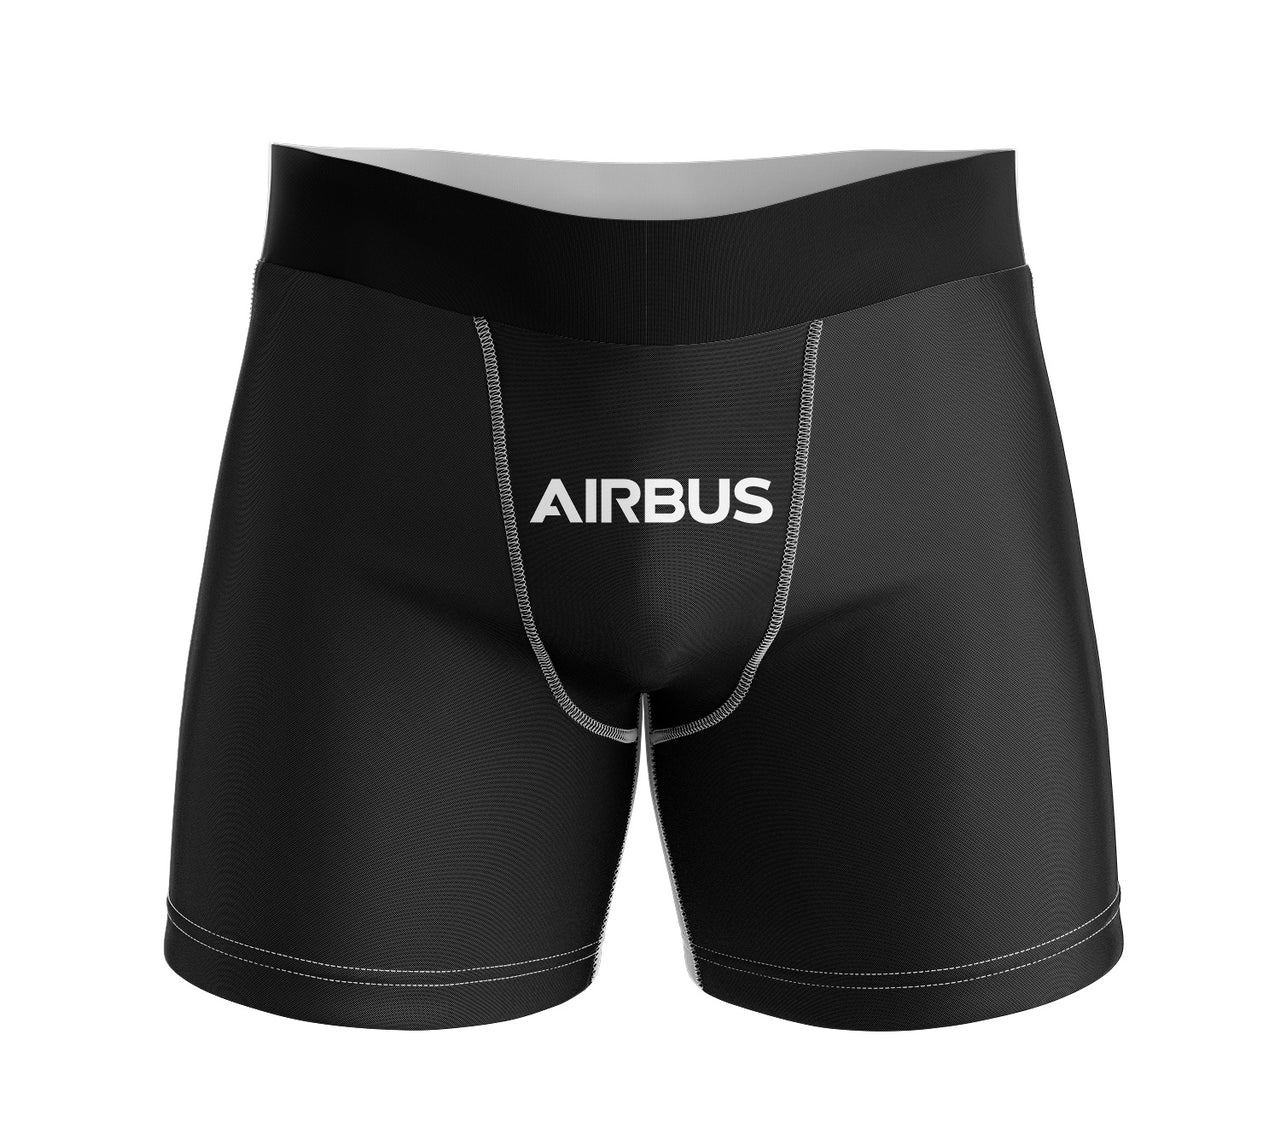 Airbus & Text Designed Men Boxers